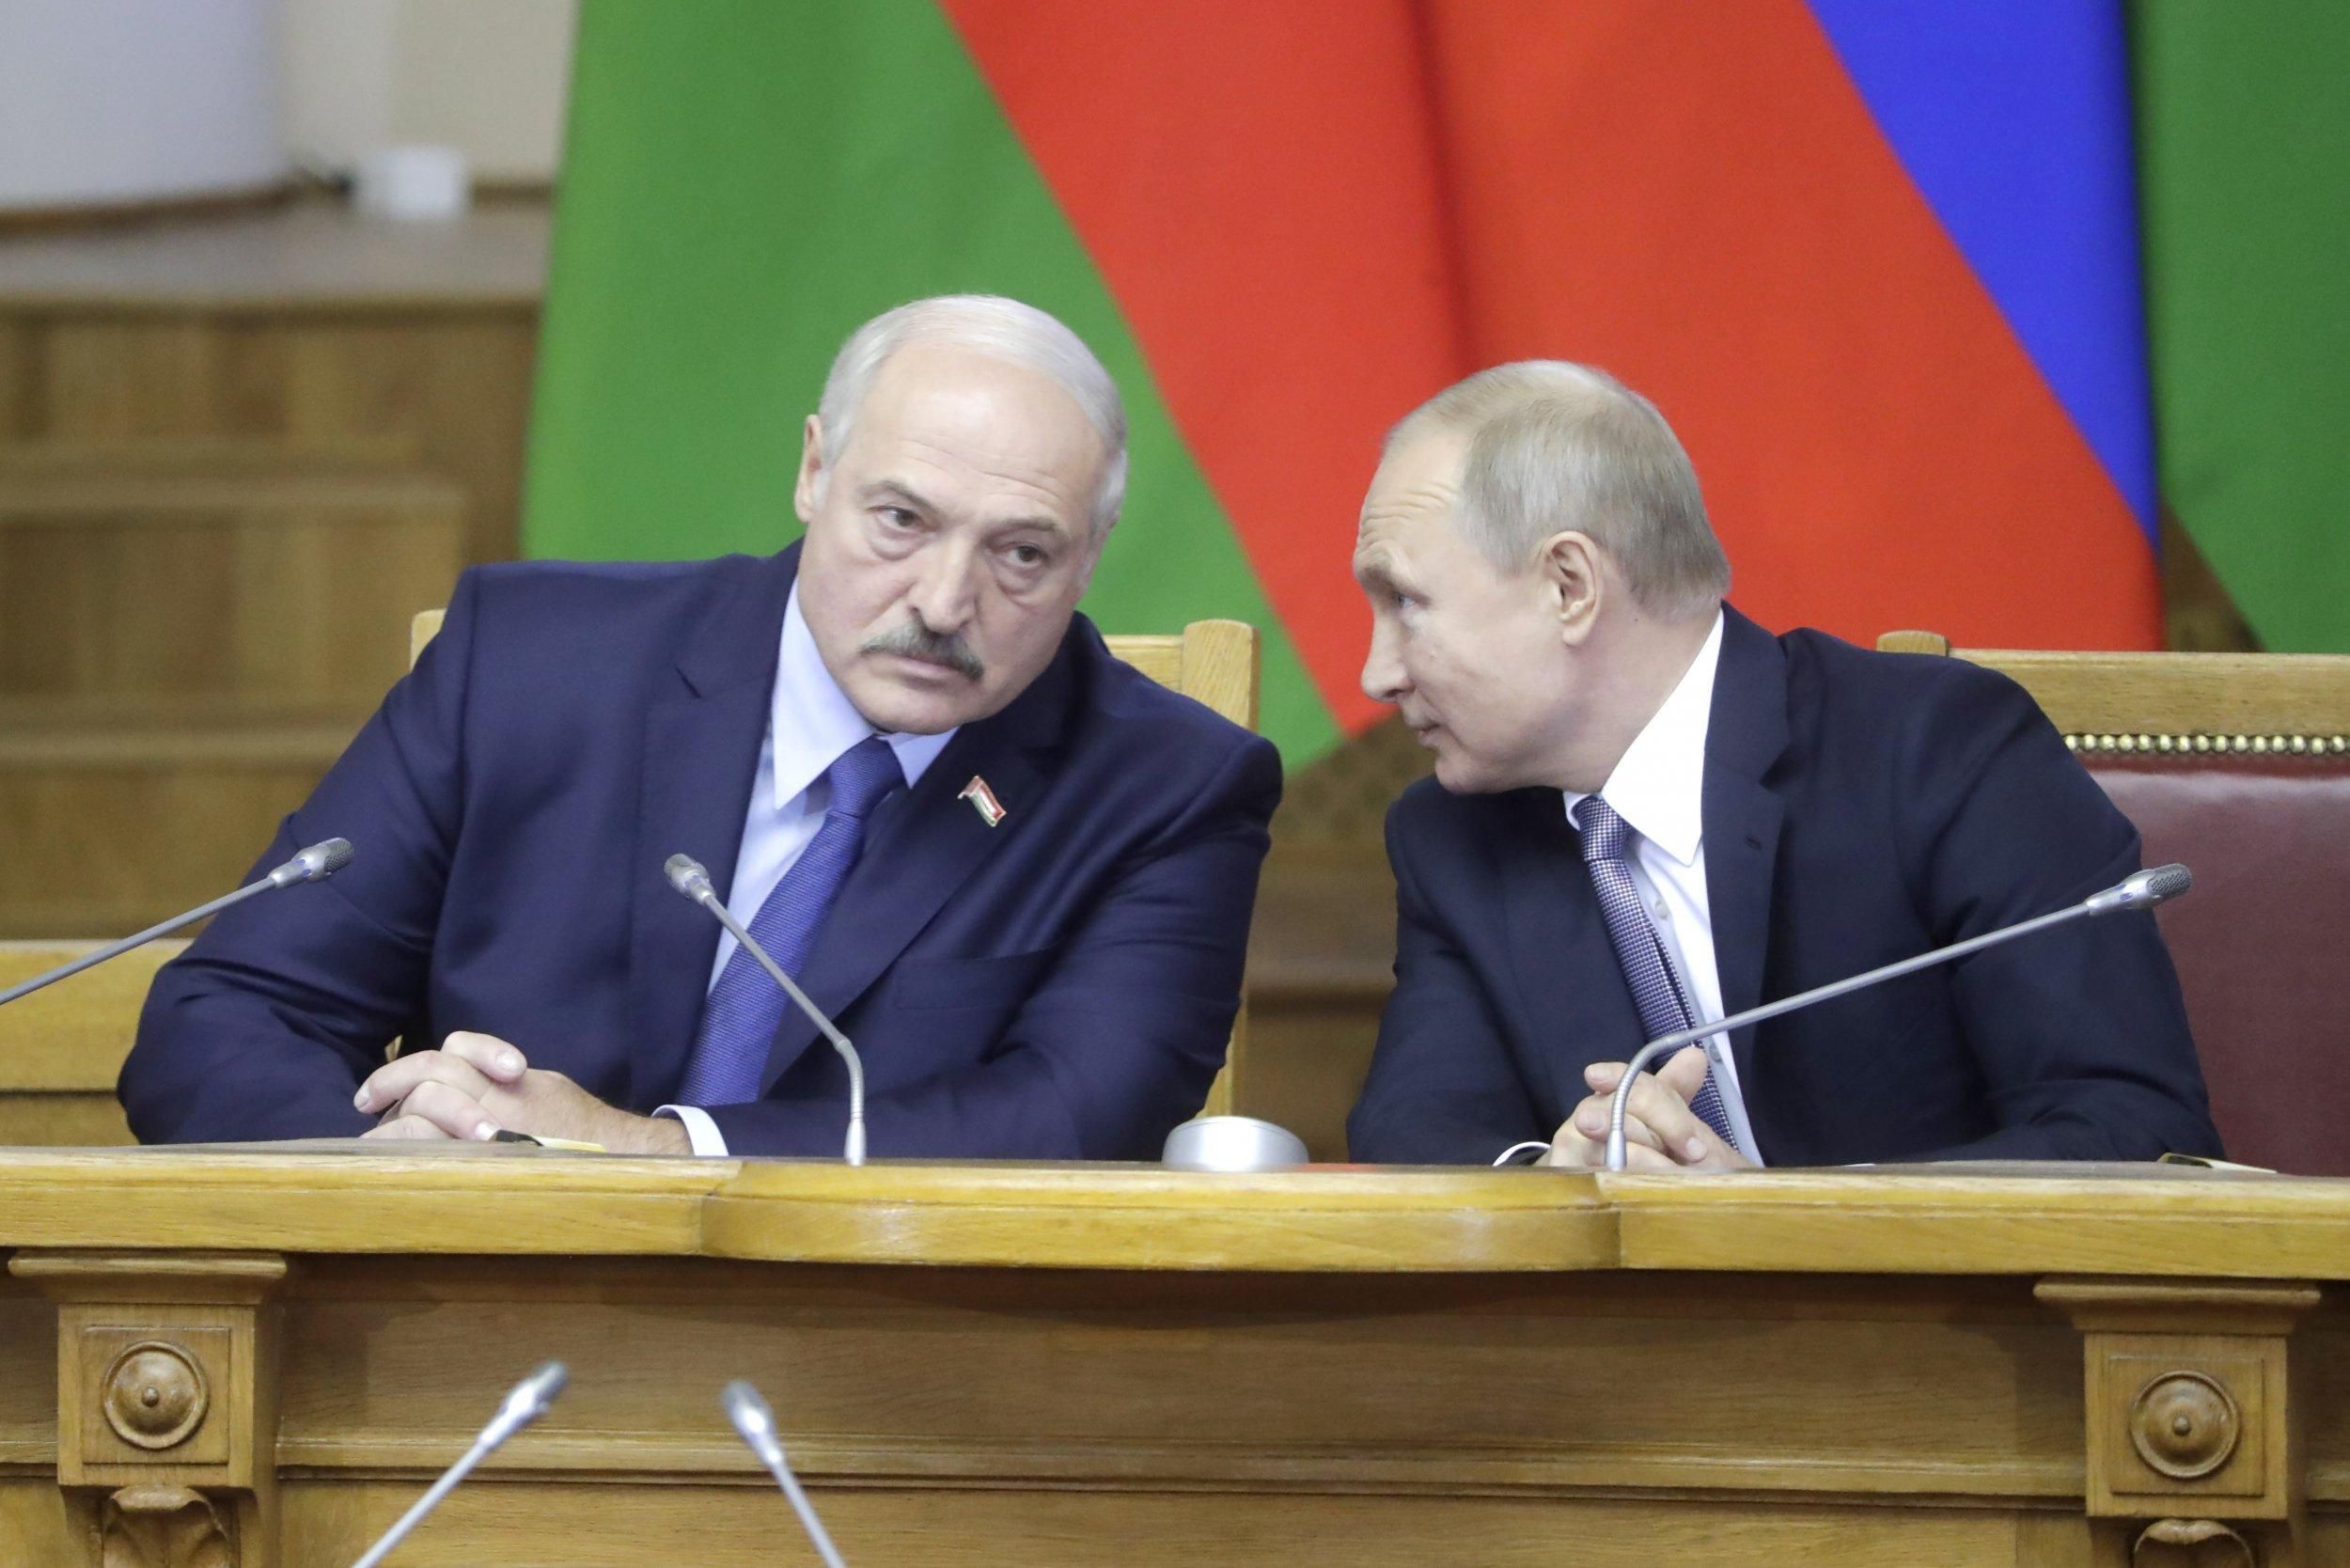 Розмова буде неприємною, – журналіст про зустріч Путіна й Лукашенка